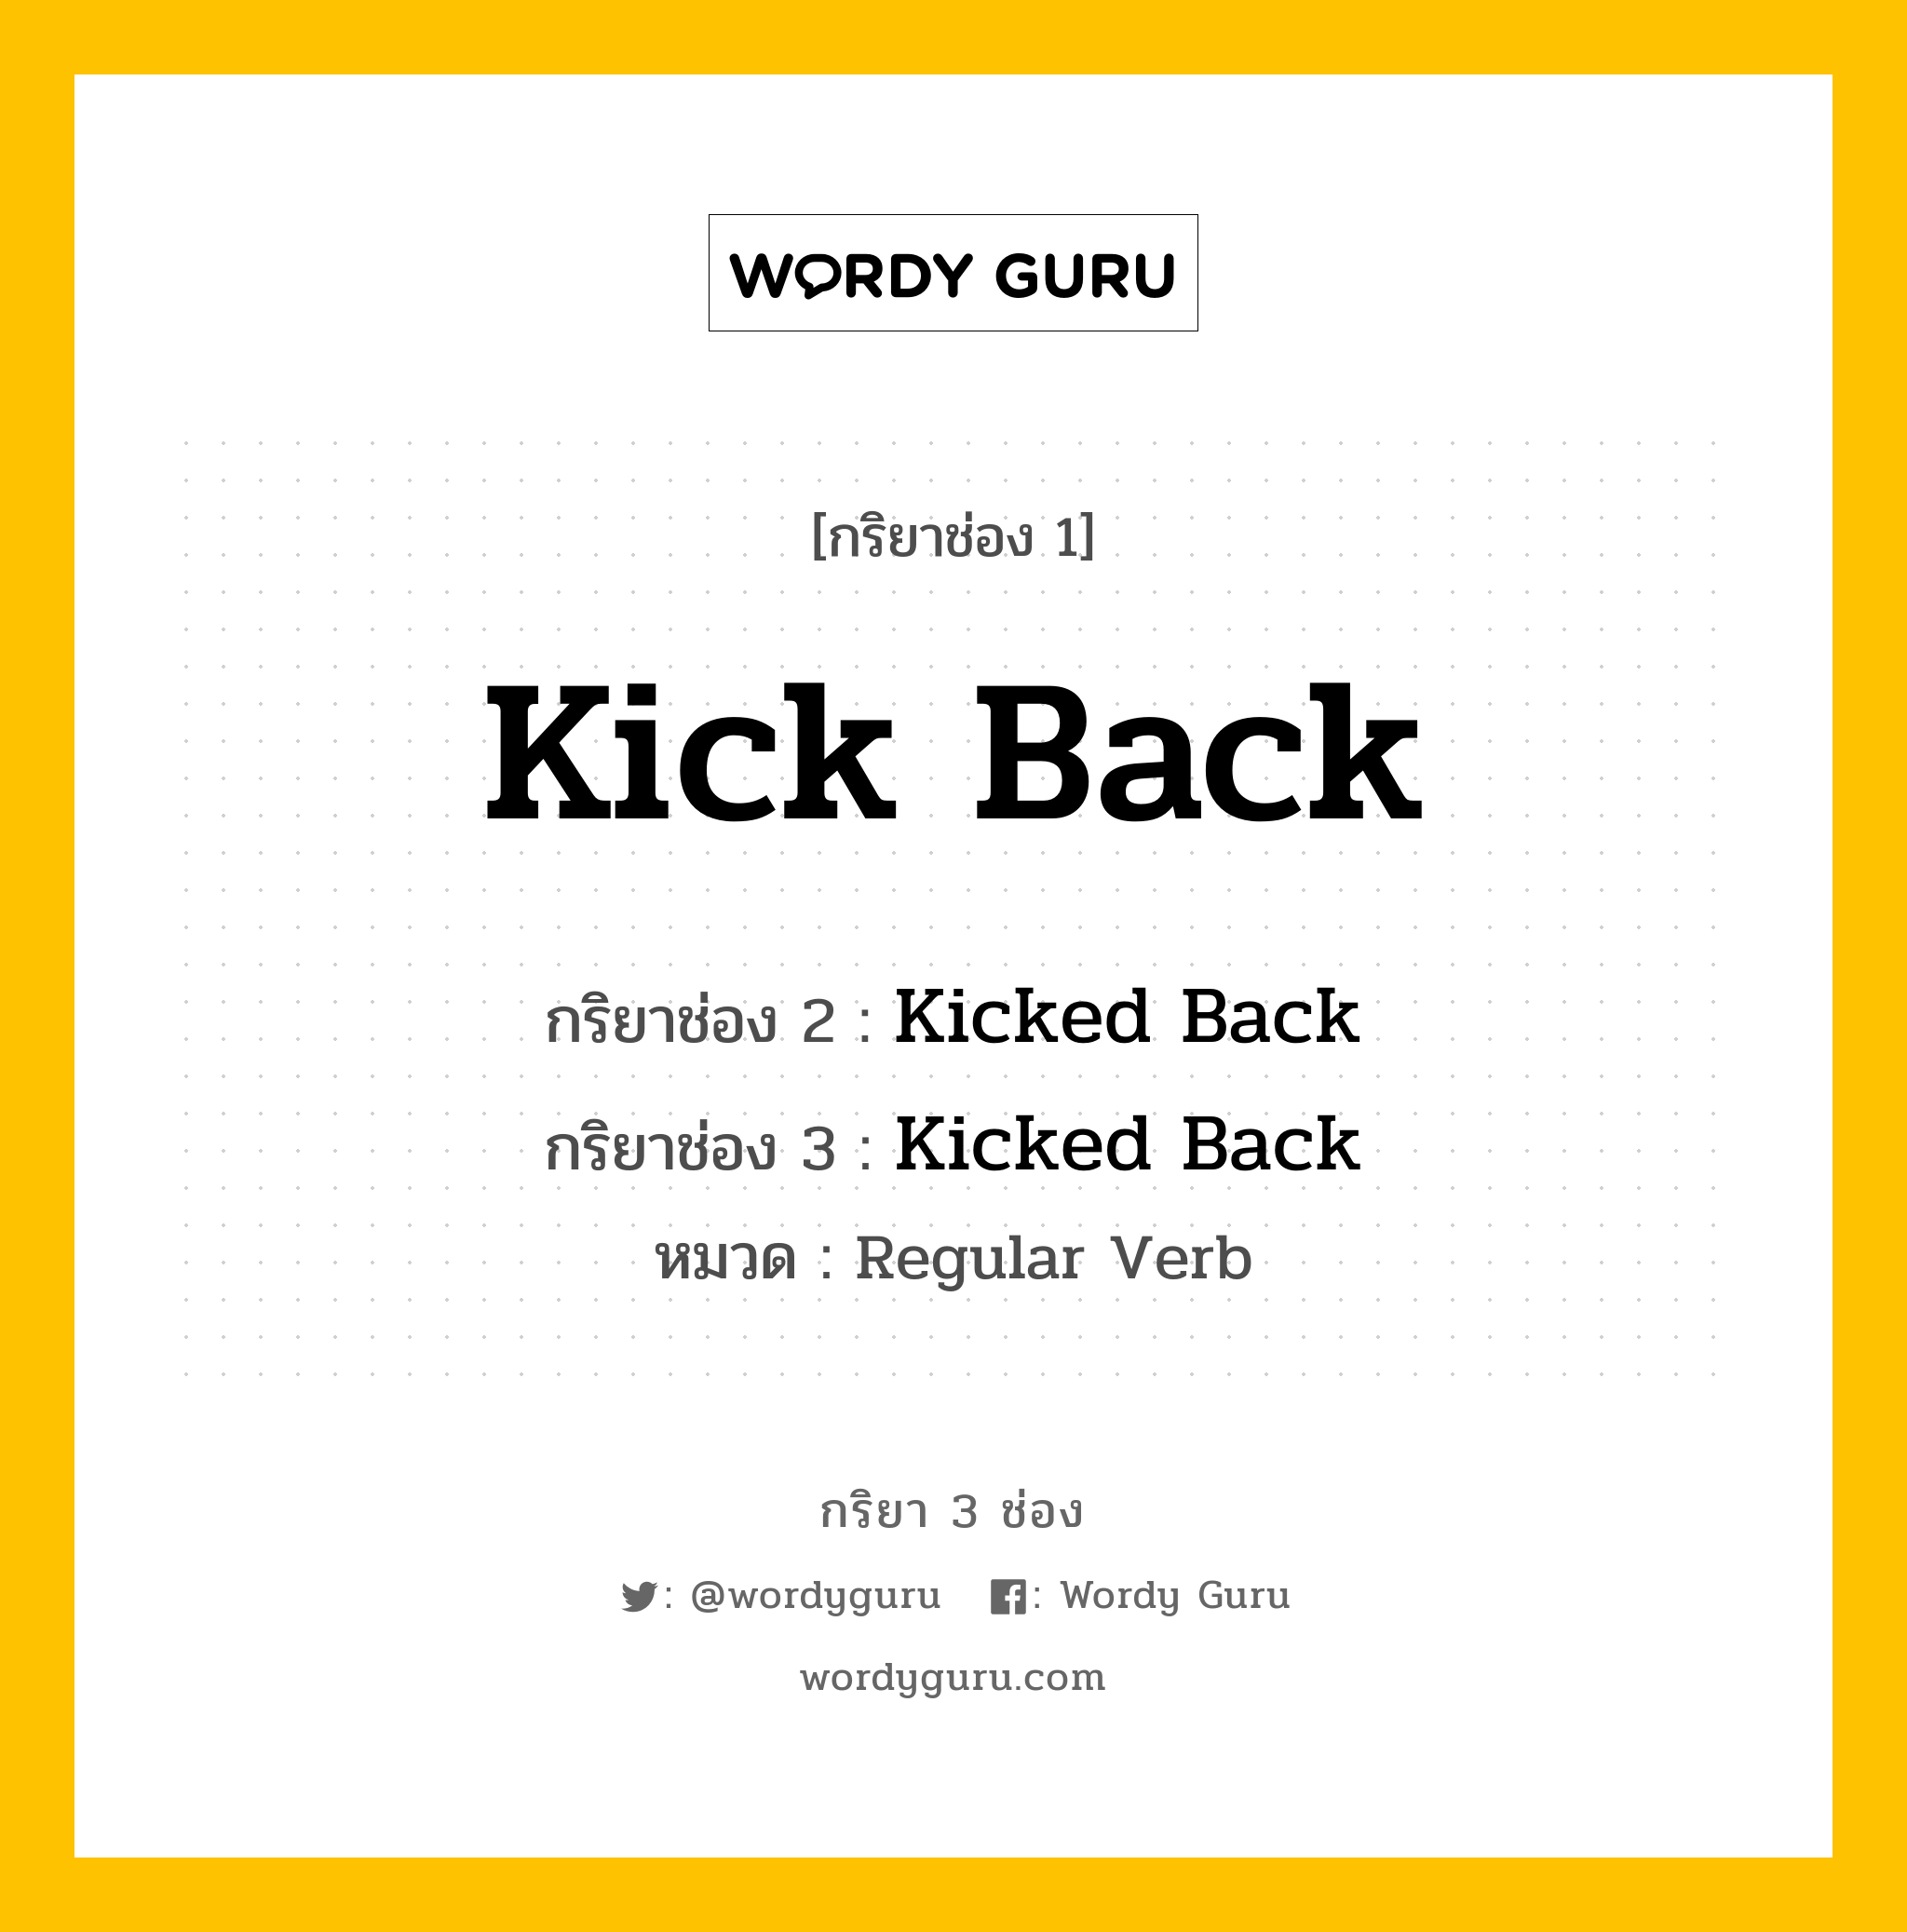 กริยา 3 ช่อง: Kick Back ช่อง 2 Kick Back ช่อง 3 คืออะไร, กริยาช่อง 1 Kick Back กริยาช่อง 2 Kicked Back กริยาช่อง 3 Kicked Back หมวด Regular Verb หมวด Regular Verb